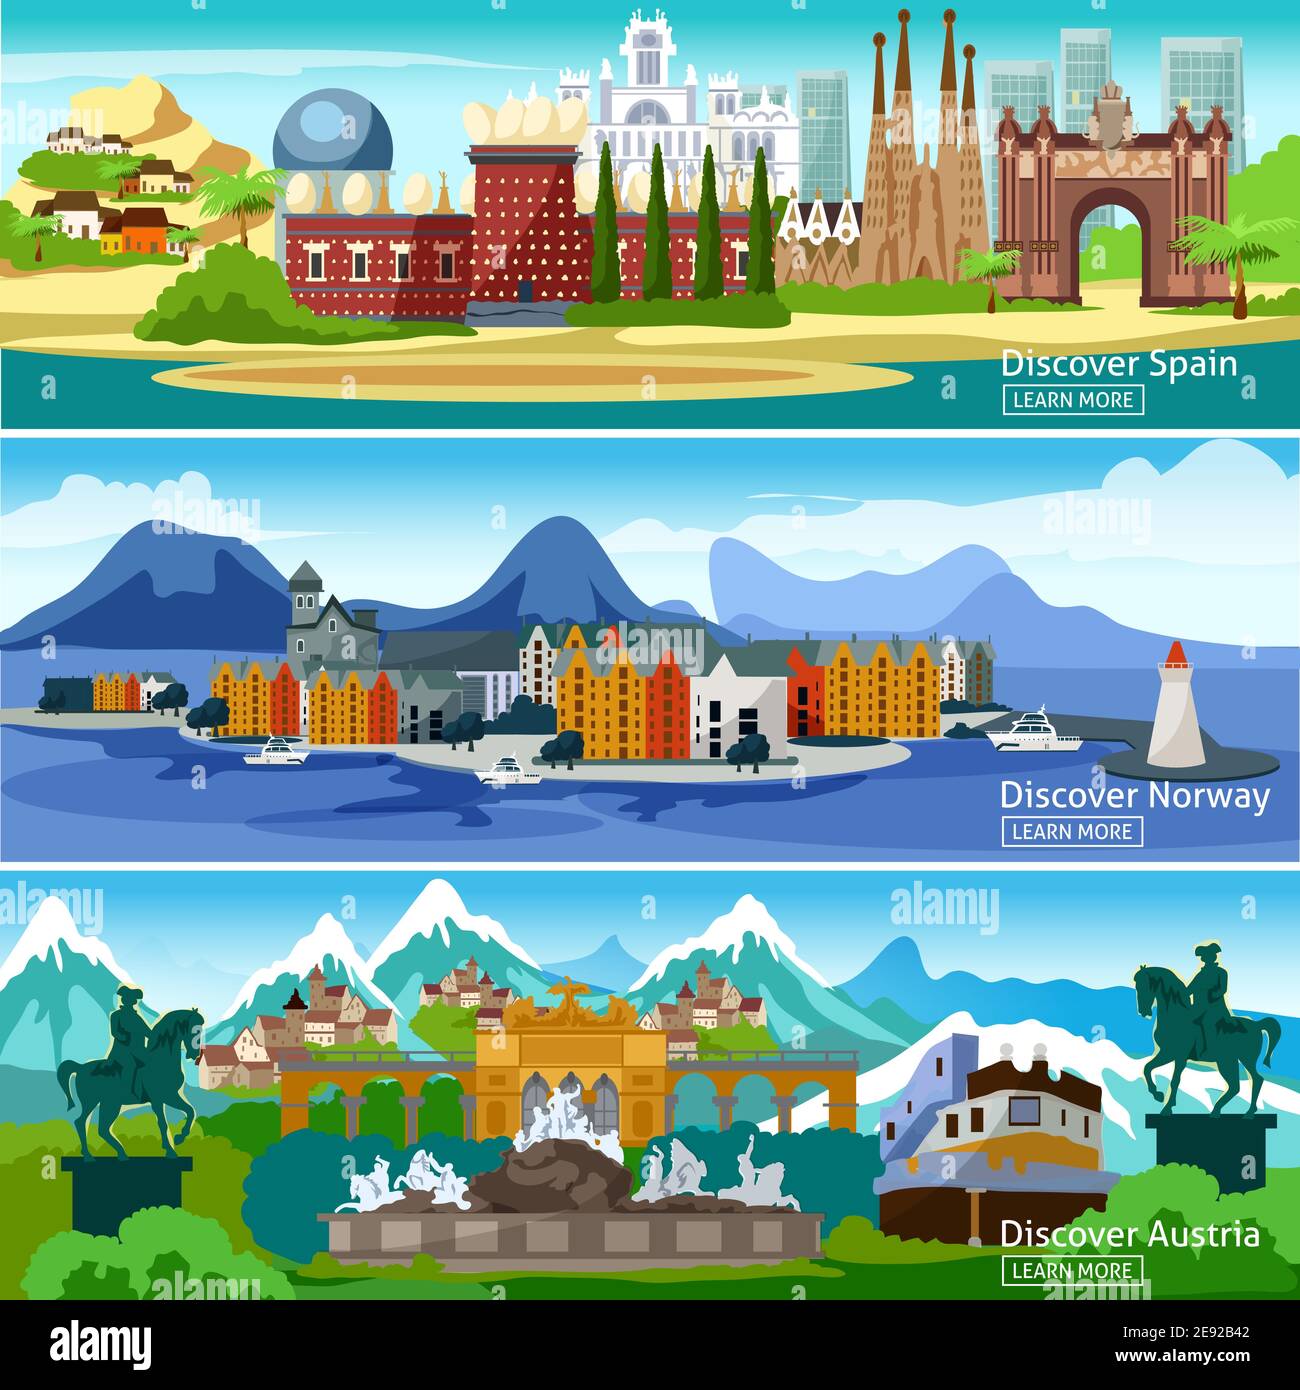 Panorama-Ansichten horizontale Banner der wichtigsten Sehenswürdigkeiten der europäischen Touristische Städte in Spanien Norwegen und Österreich Vektorgrafik Stock Vektor